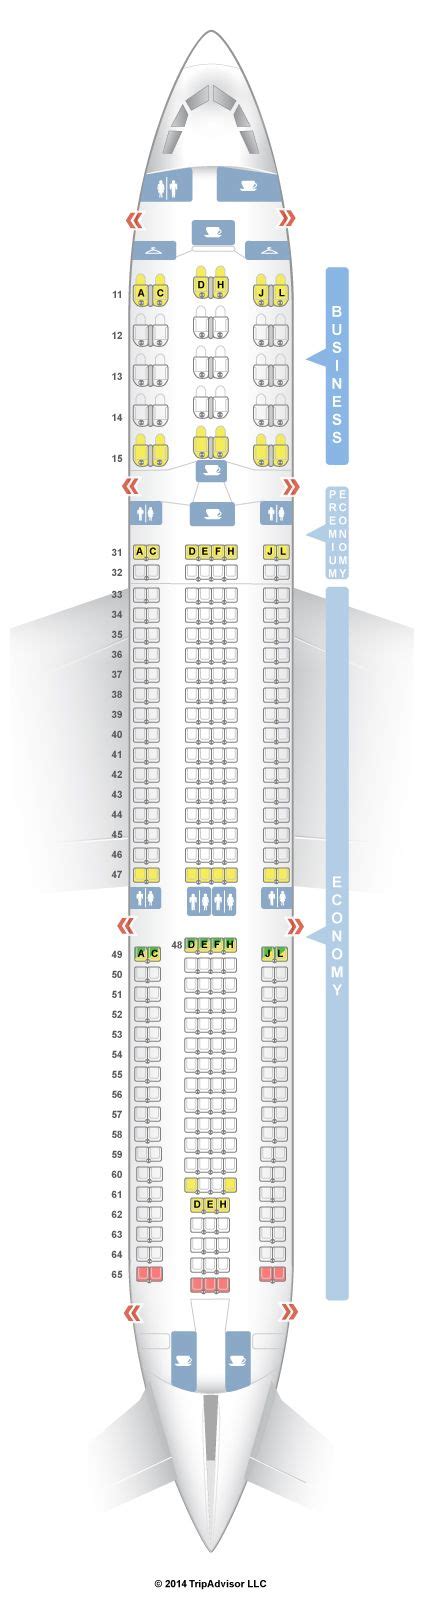 Seatguru Seat Map Air China Airbus A330 300 333 Seatguru Fiji